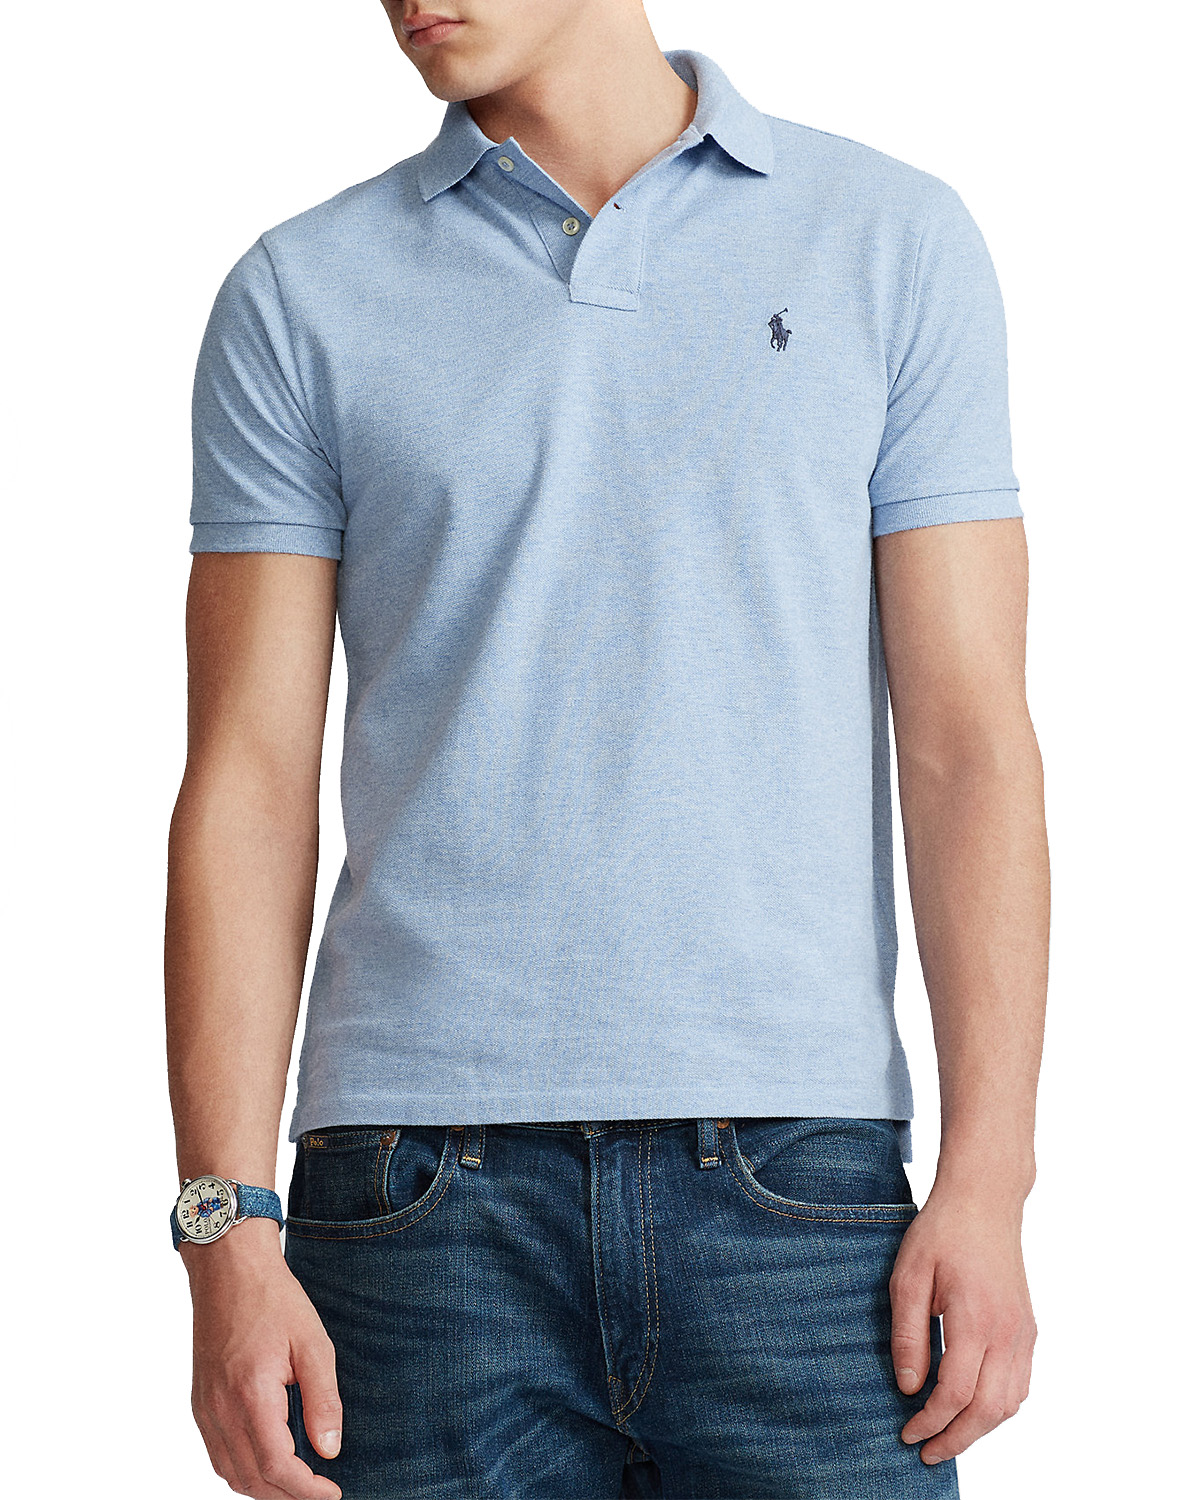 Polo Ralph Lauren Cotton Shirts Blue for Men Mens Shirts Polo Ralph Lauren Shirts 